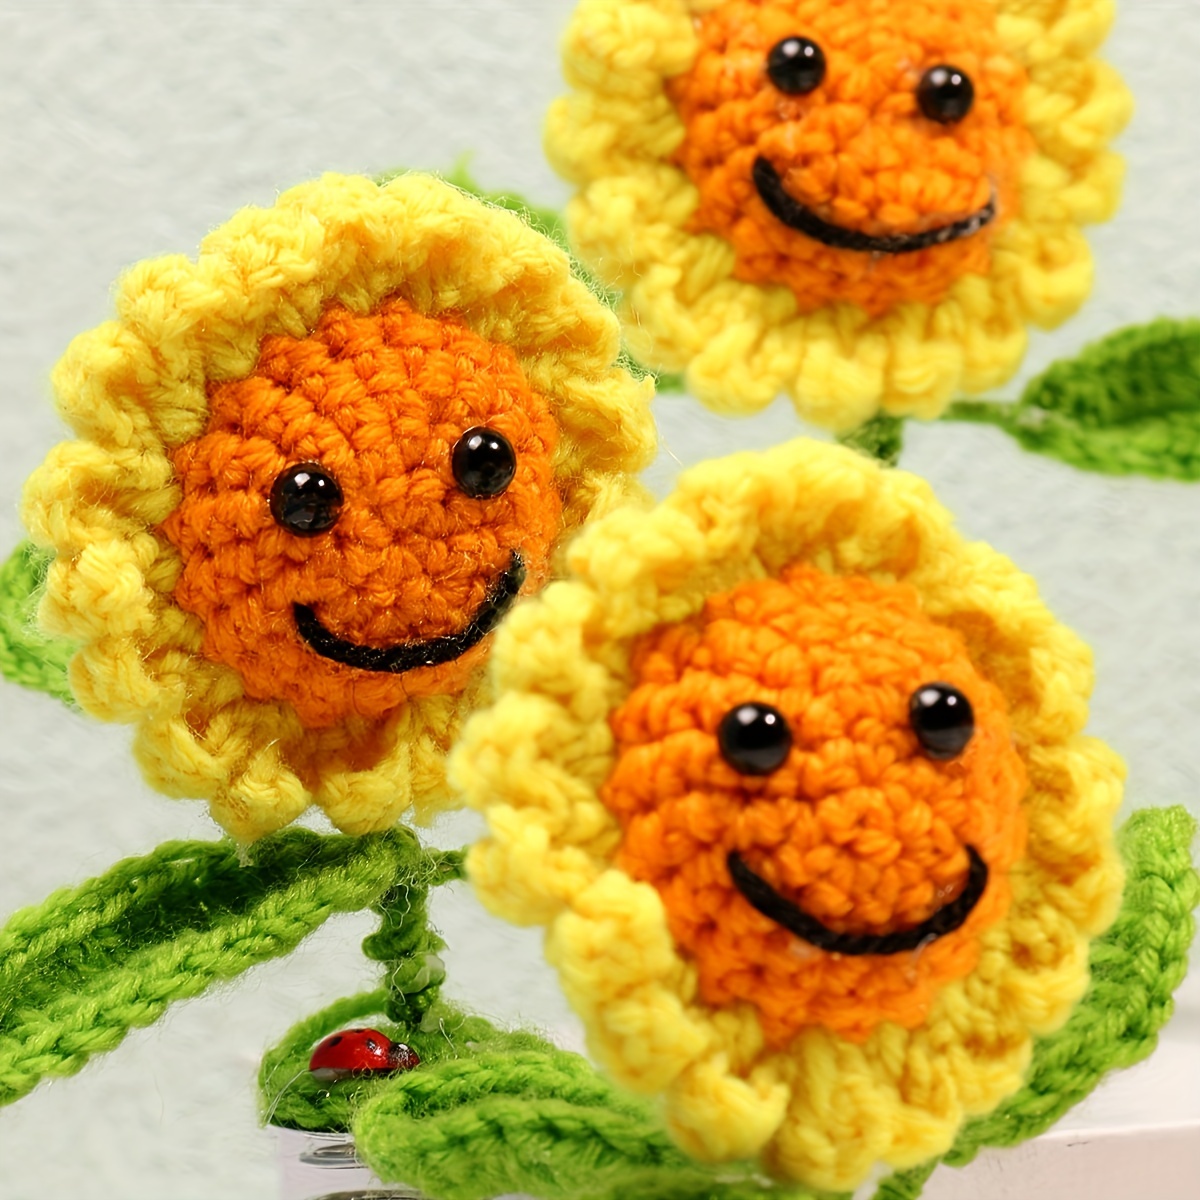 Handgefertigte gestrickte Sonnenblumen-Autozubehör, Sonnenblumen